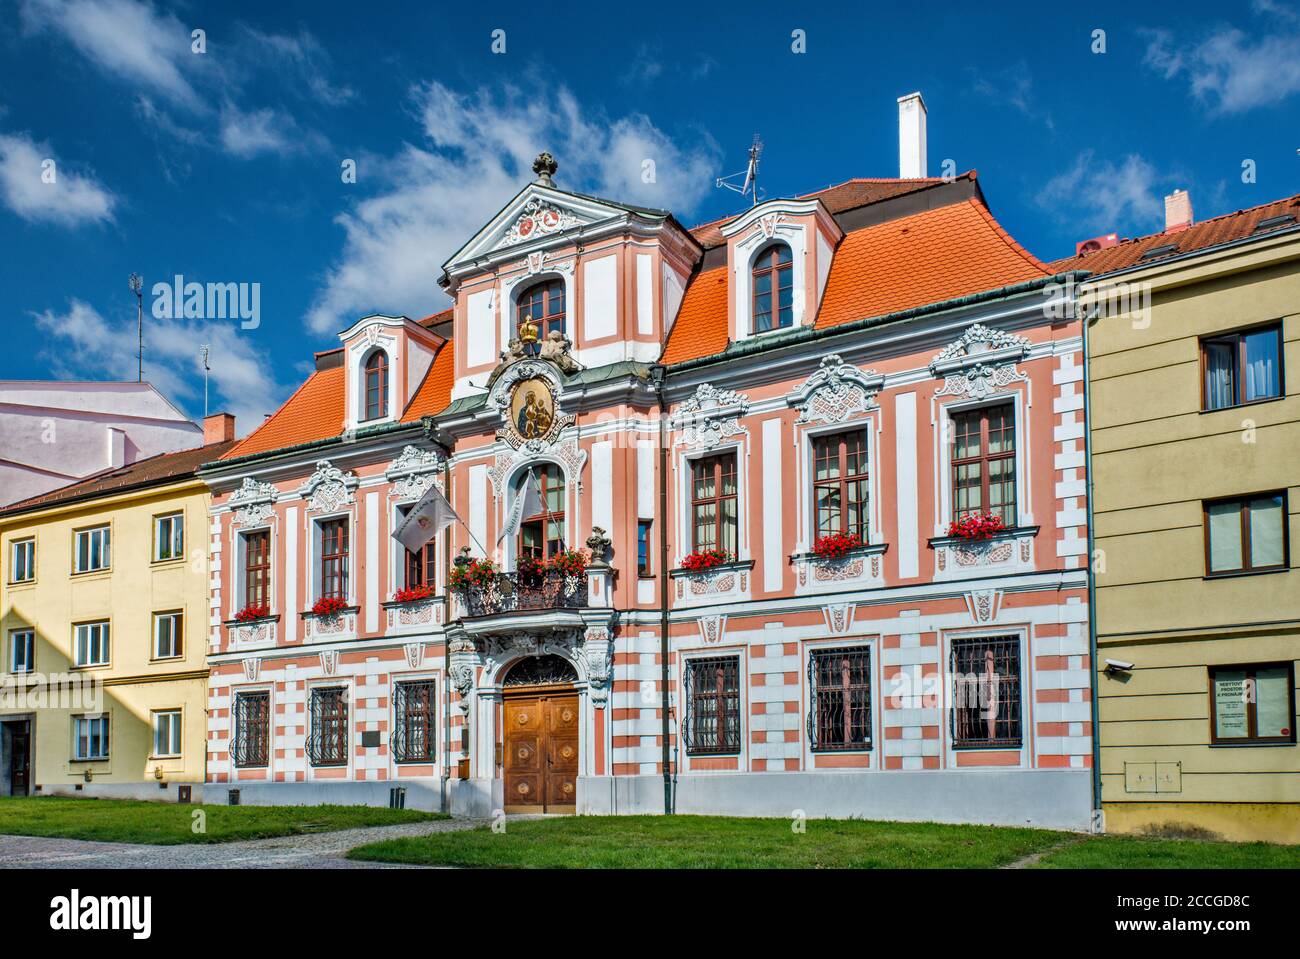 Sobkuv palac, 1730, in stile barocco, palazzo a Masarykova trida, strada in Opava, Regione Moravian-Slesia, Slesia, Repubblica Ceca Foto Stock